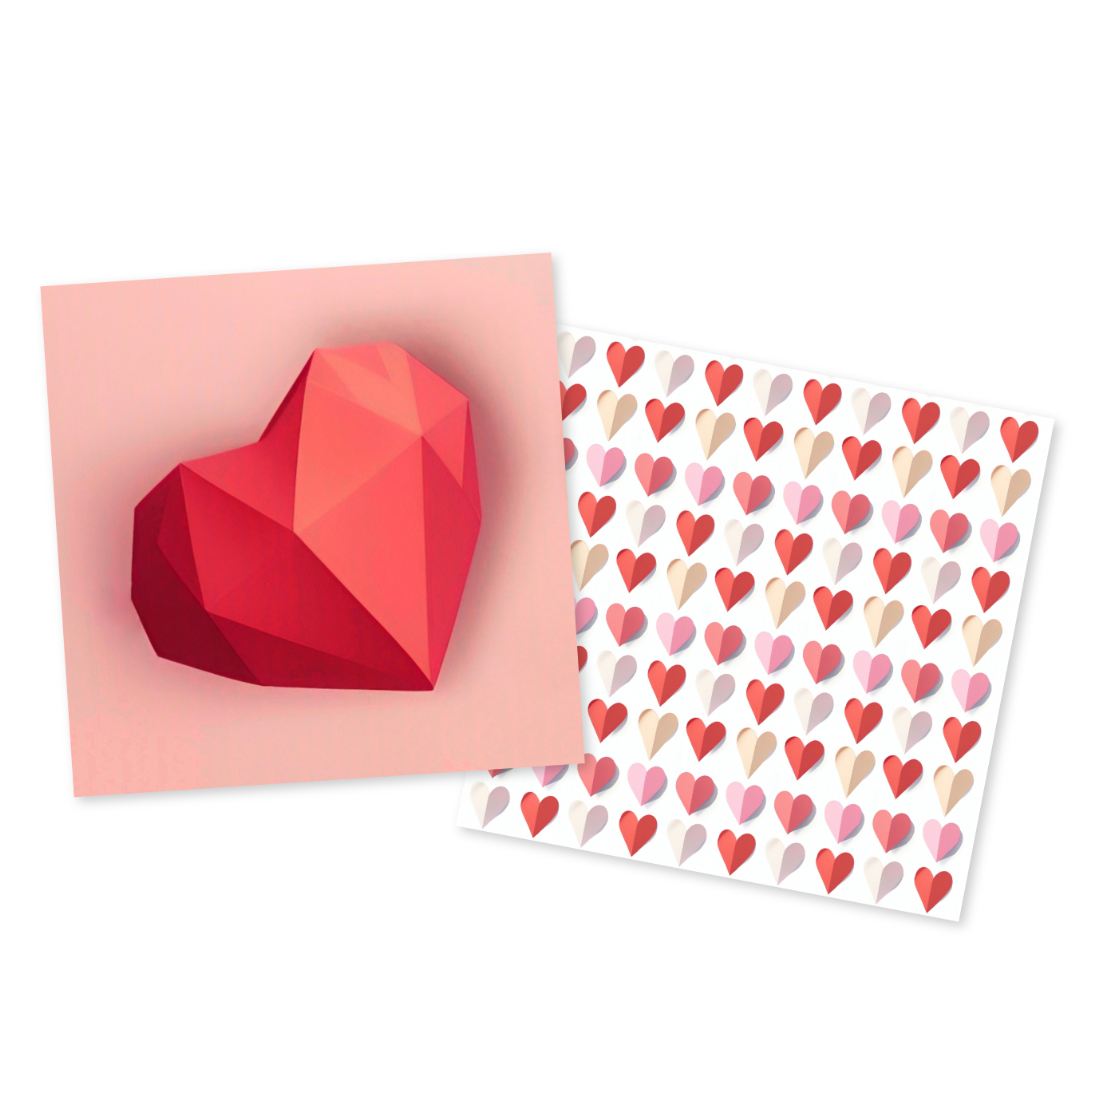 Valentine's Day Background, Valentine Digital Paper